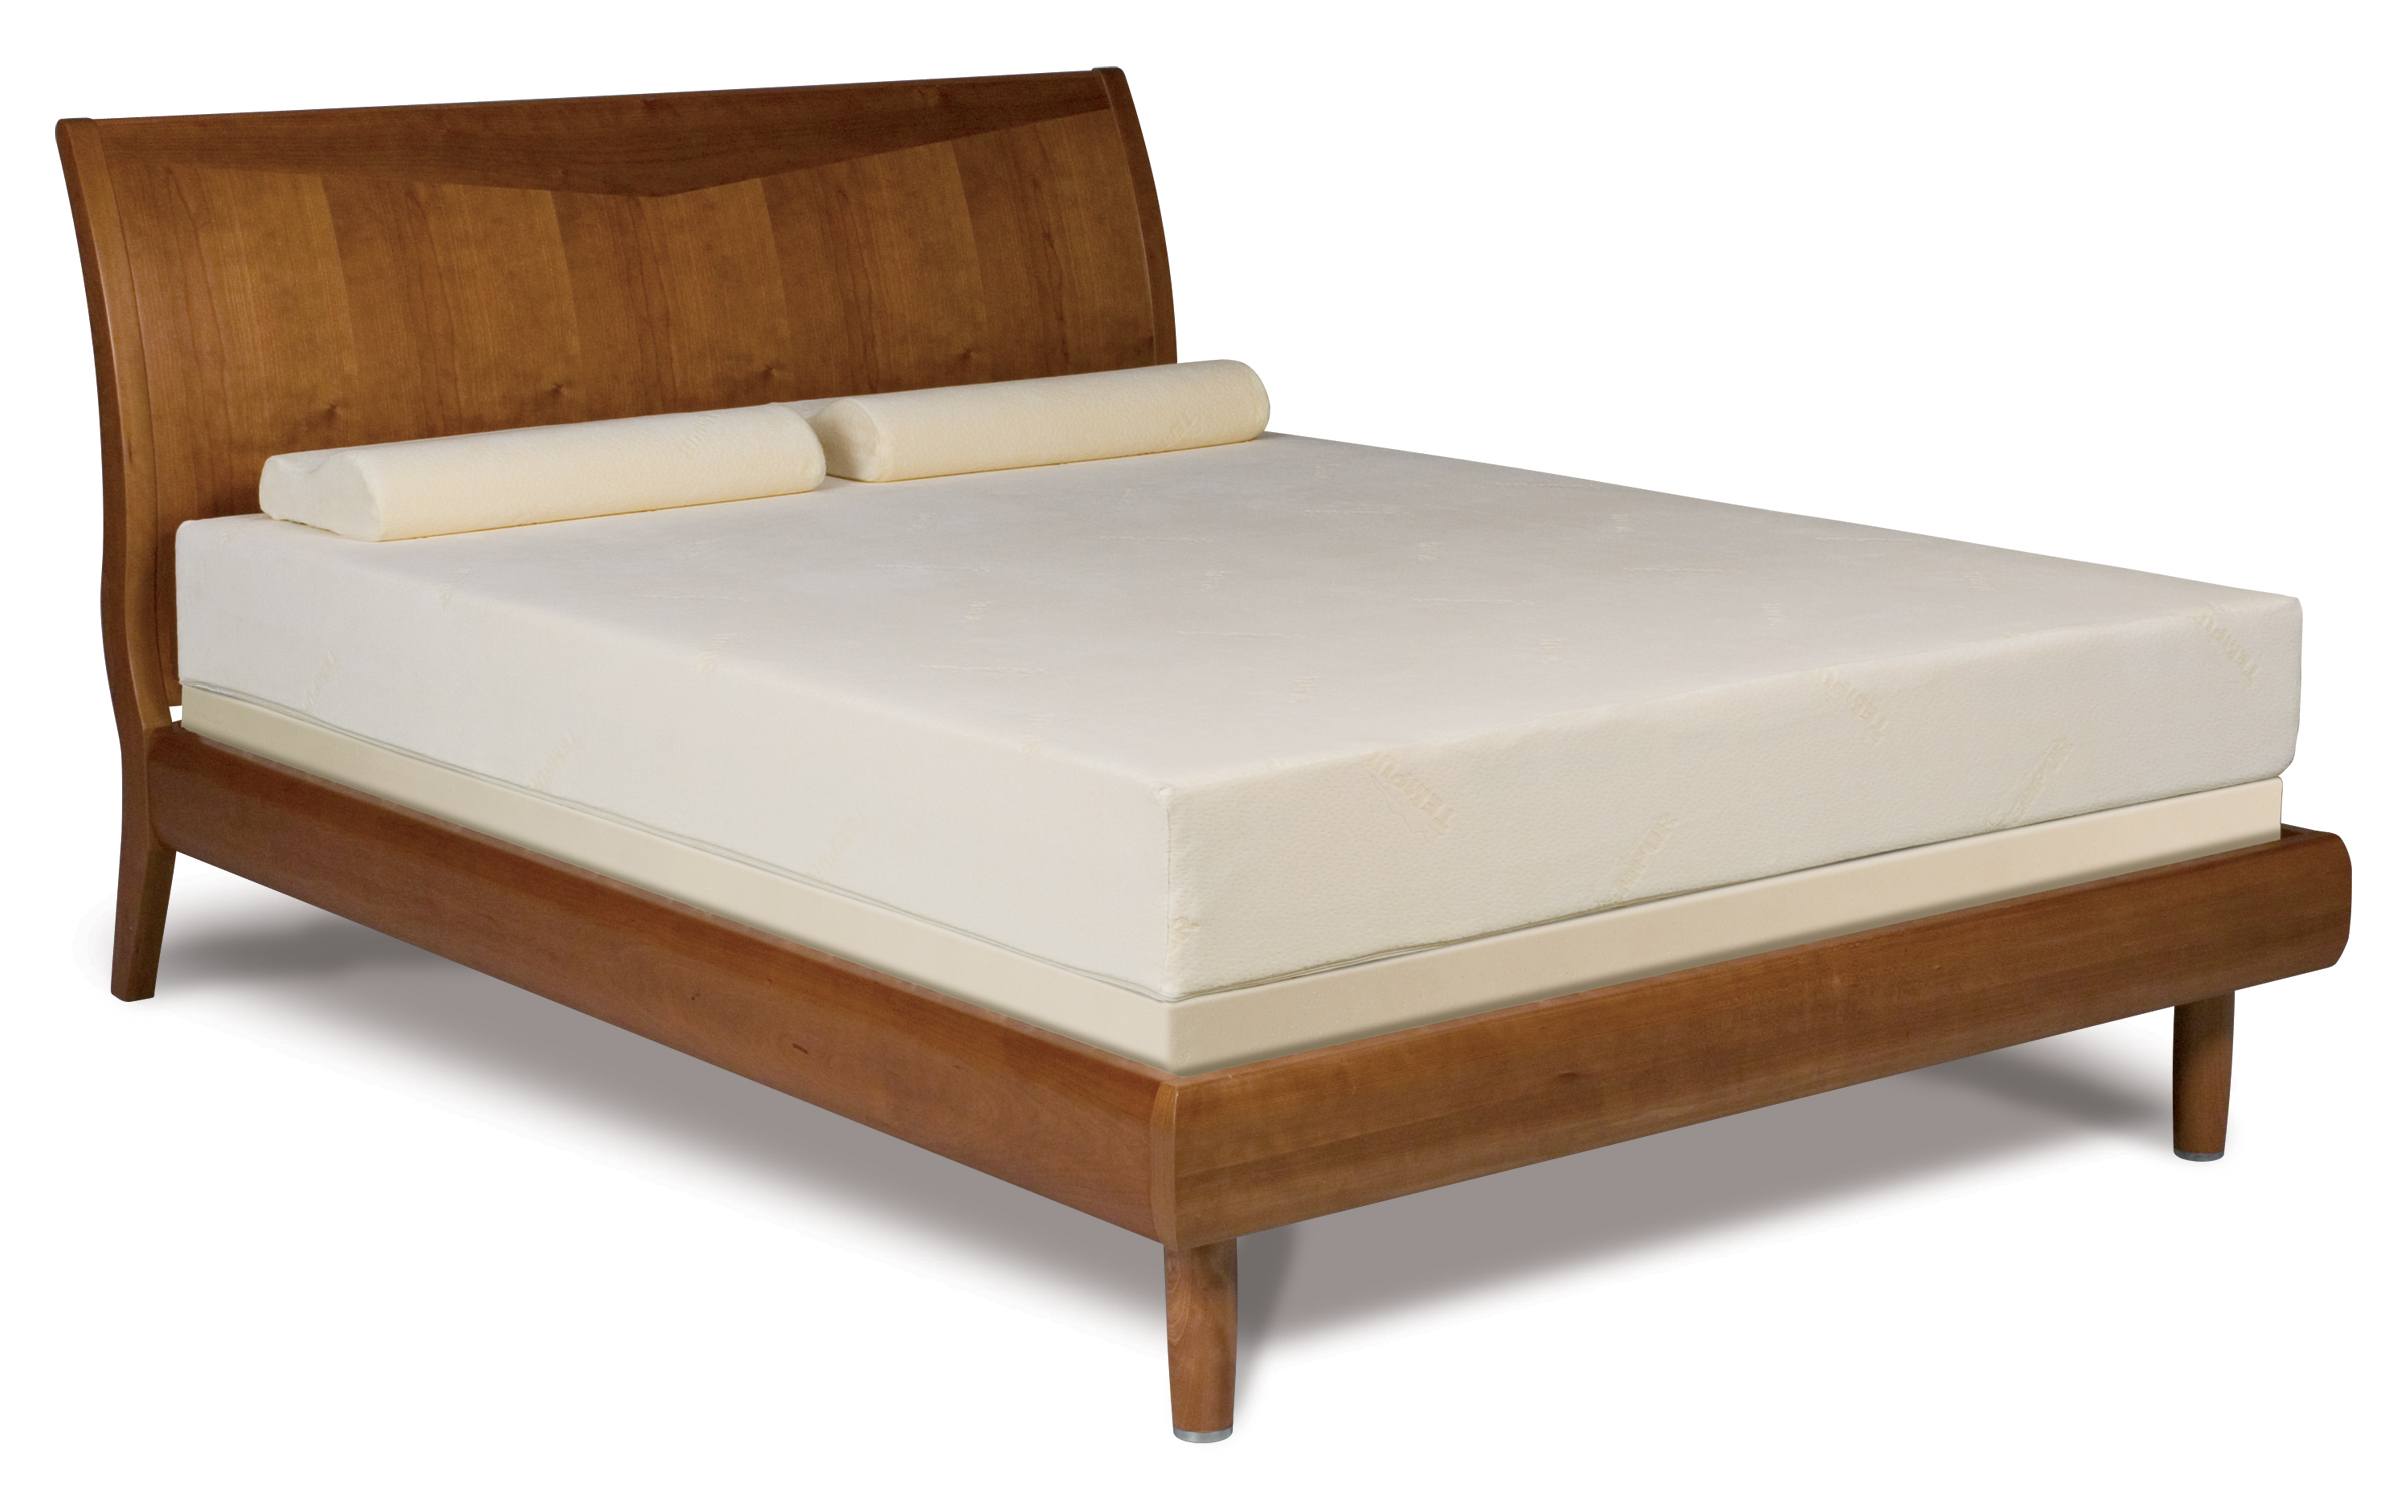 original tempurpedic mattress review